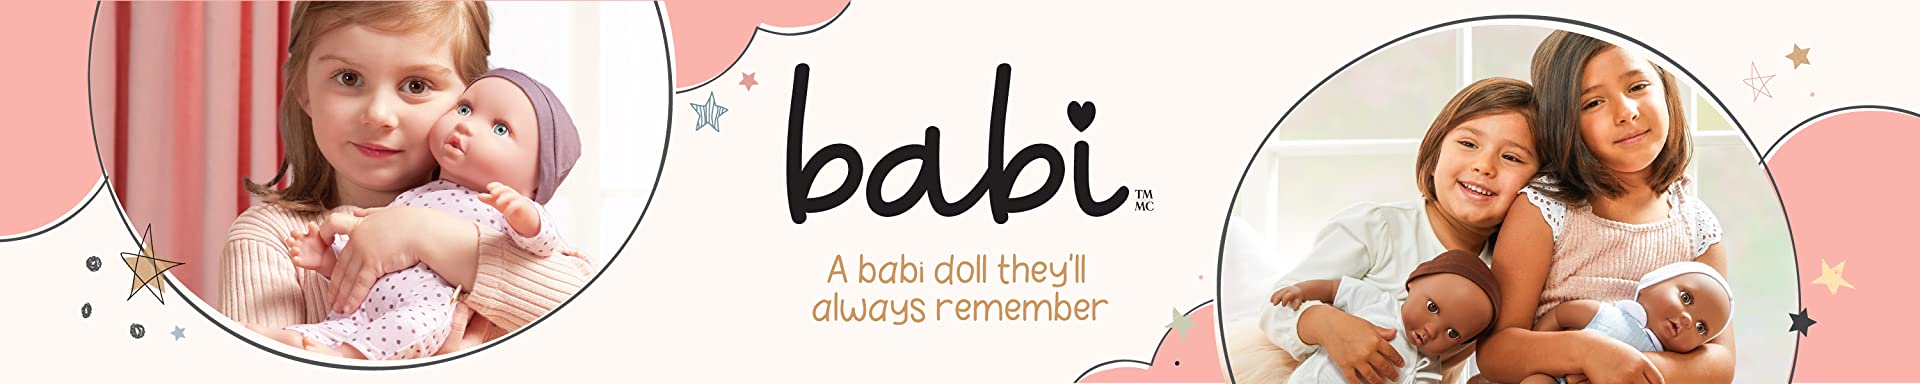 Babi Doll Egypt